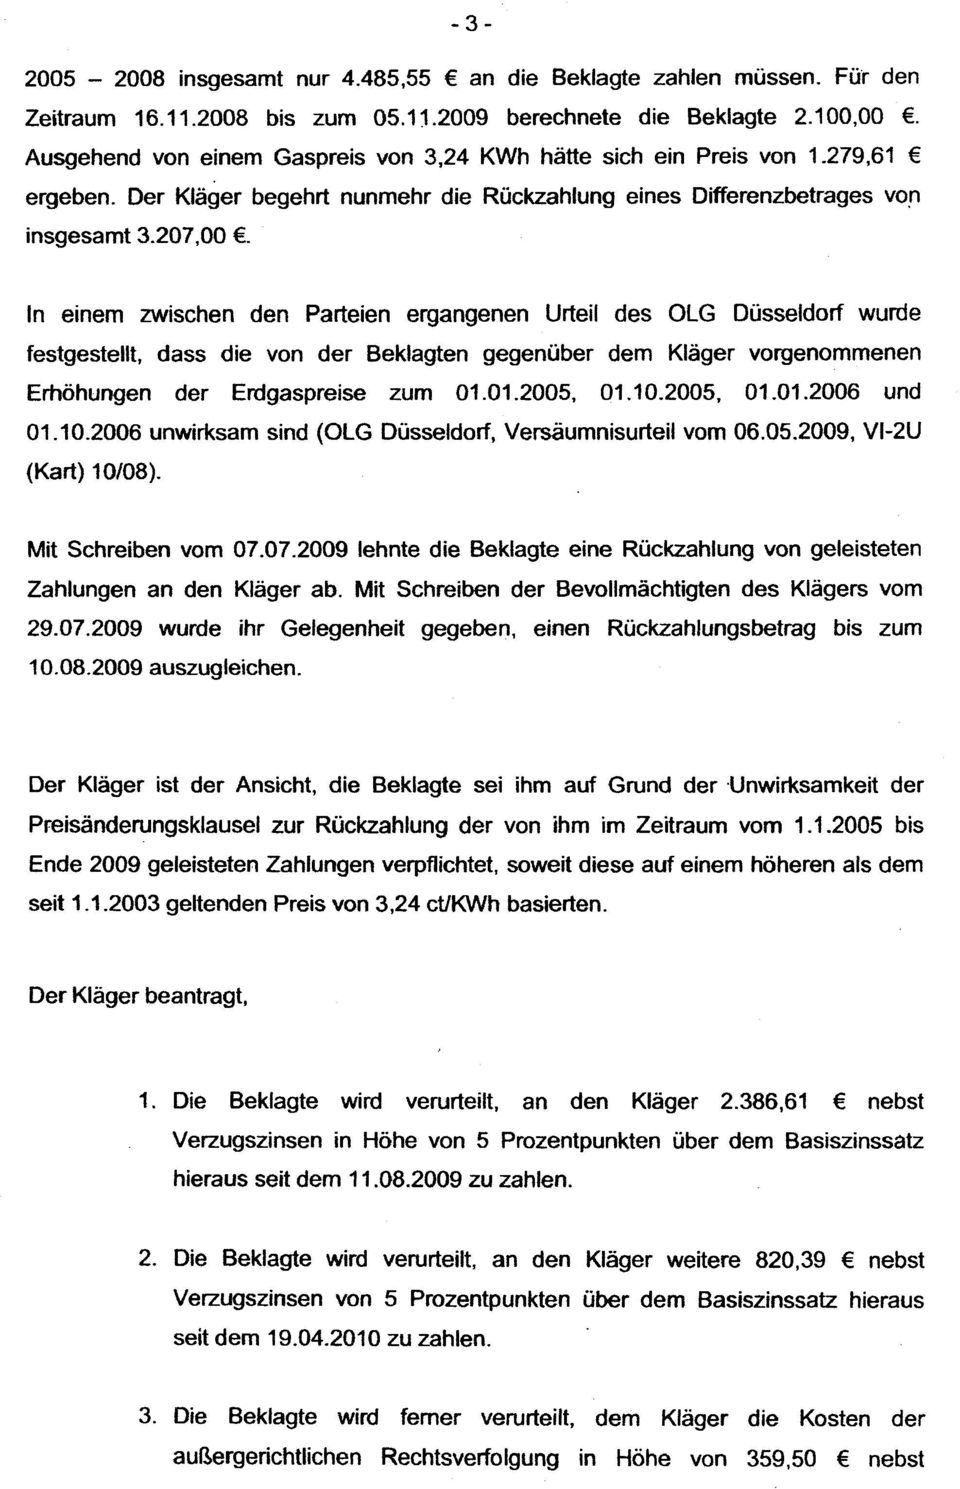 In einem zwischen den Parteien ergangenen Urteil des OlG Düsseldorf wurde festgestellt, dass die von der Beklagten gegenüber dem Kläger vorgenommenen Erhöhungen der Erdgaspreise zum 01.01.2005, 01.10.